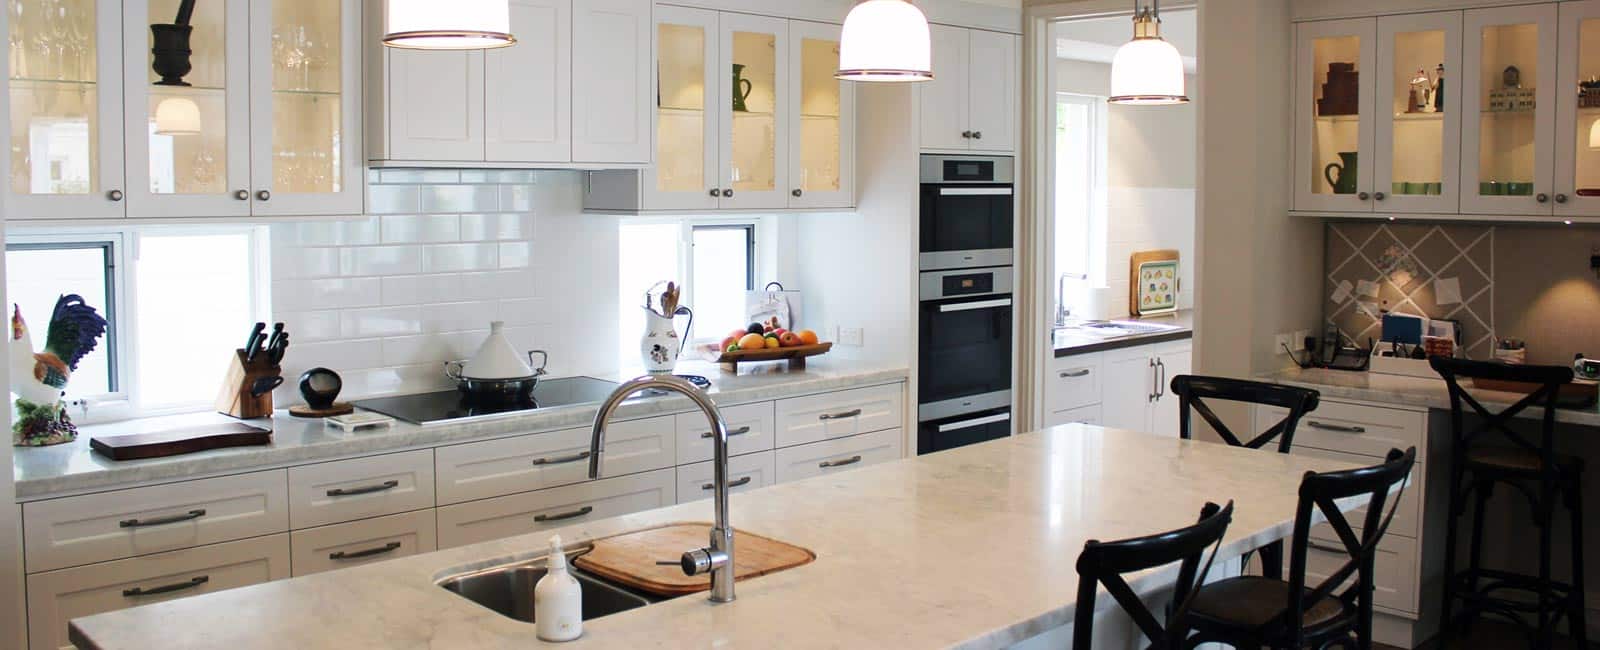 kitchens perth | kitchens designed & renovations - kitchen